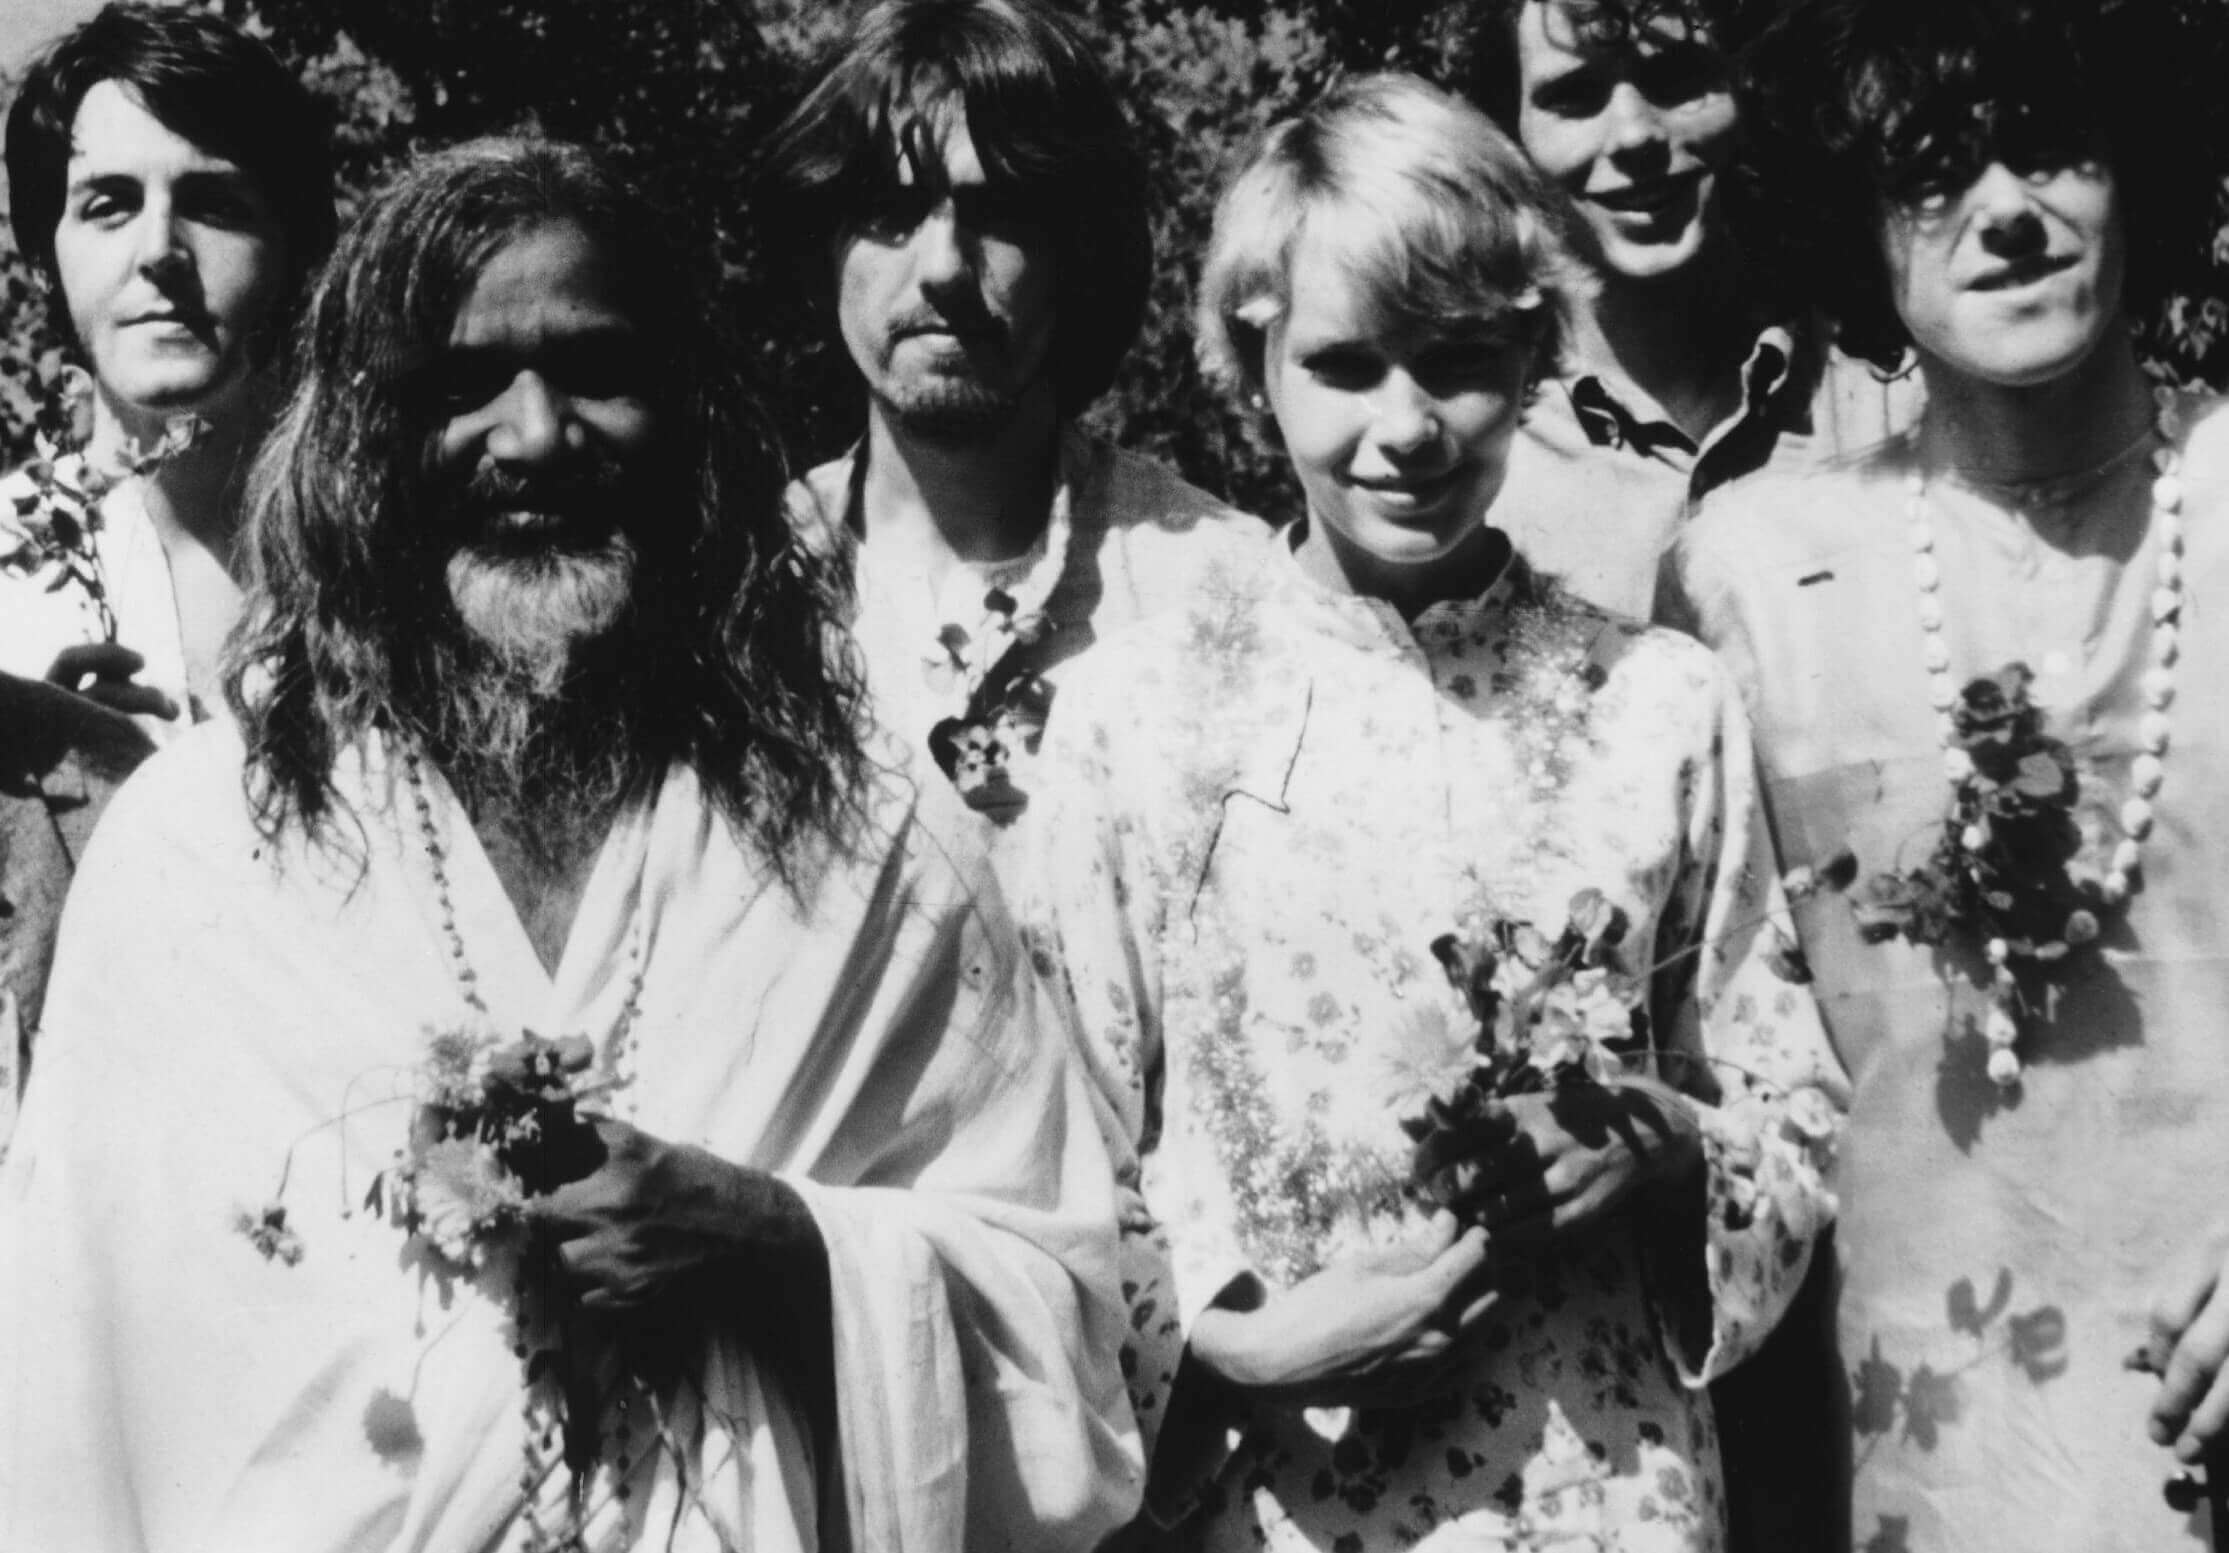 Beatles in India with Donovan and the Maharishi Mahesh Yogi